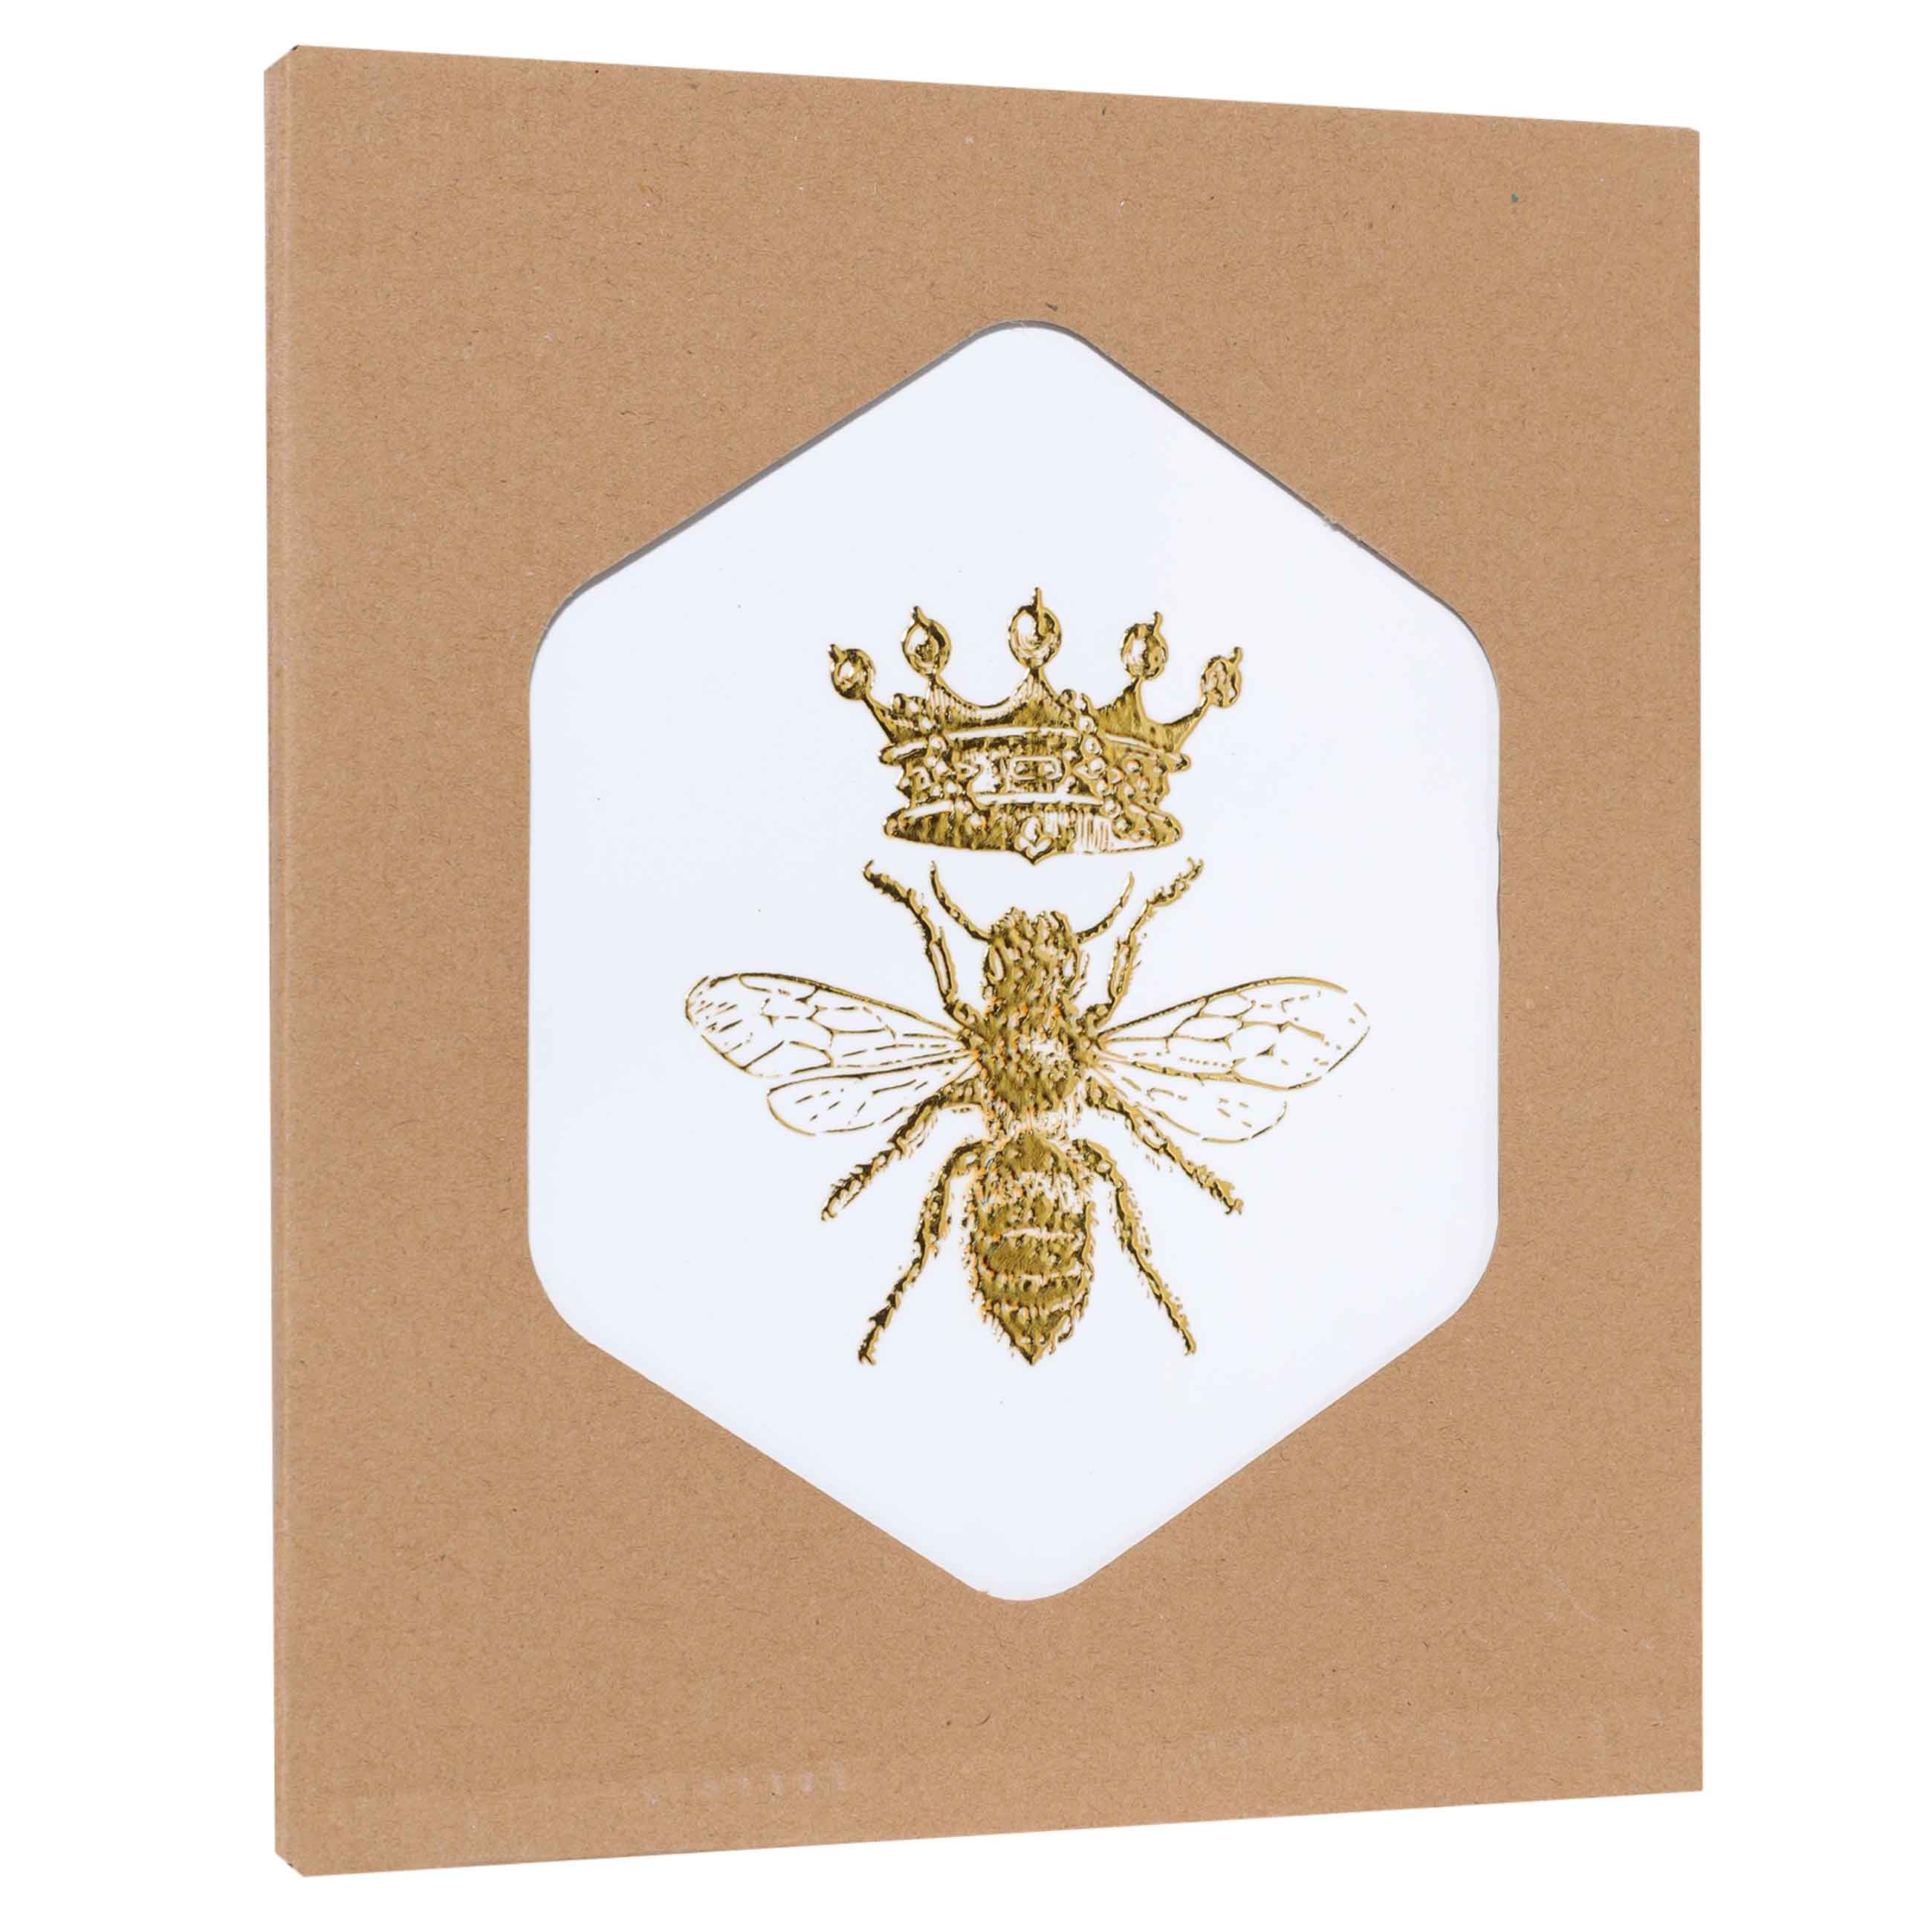 Подставка под горячее, 20 см, керамика/пробка, шестиугольная, белая, Королевская пчела, Honey изображение № 3